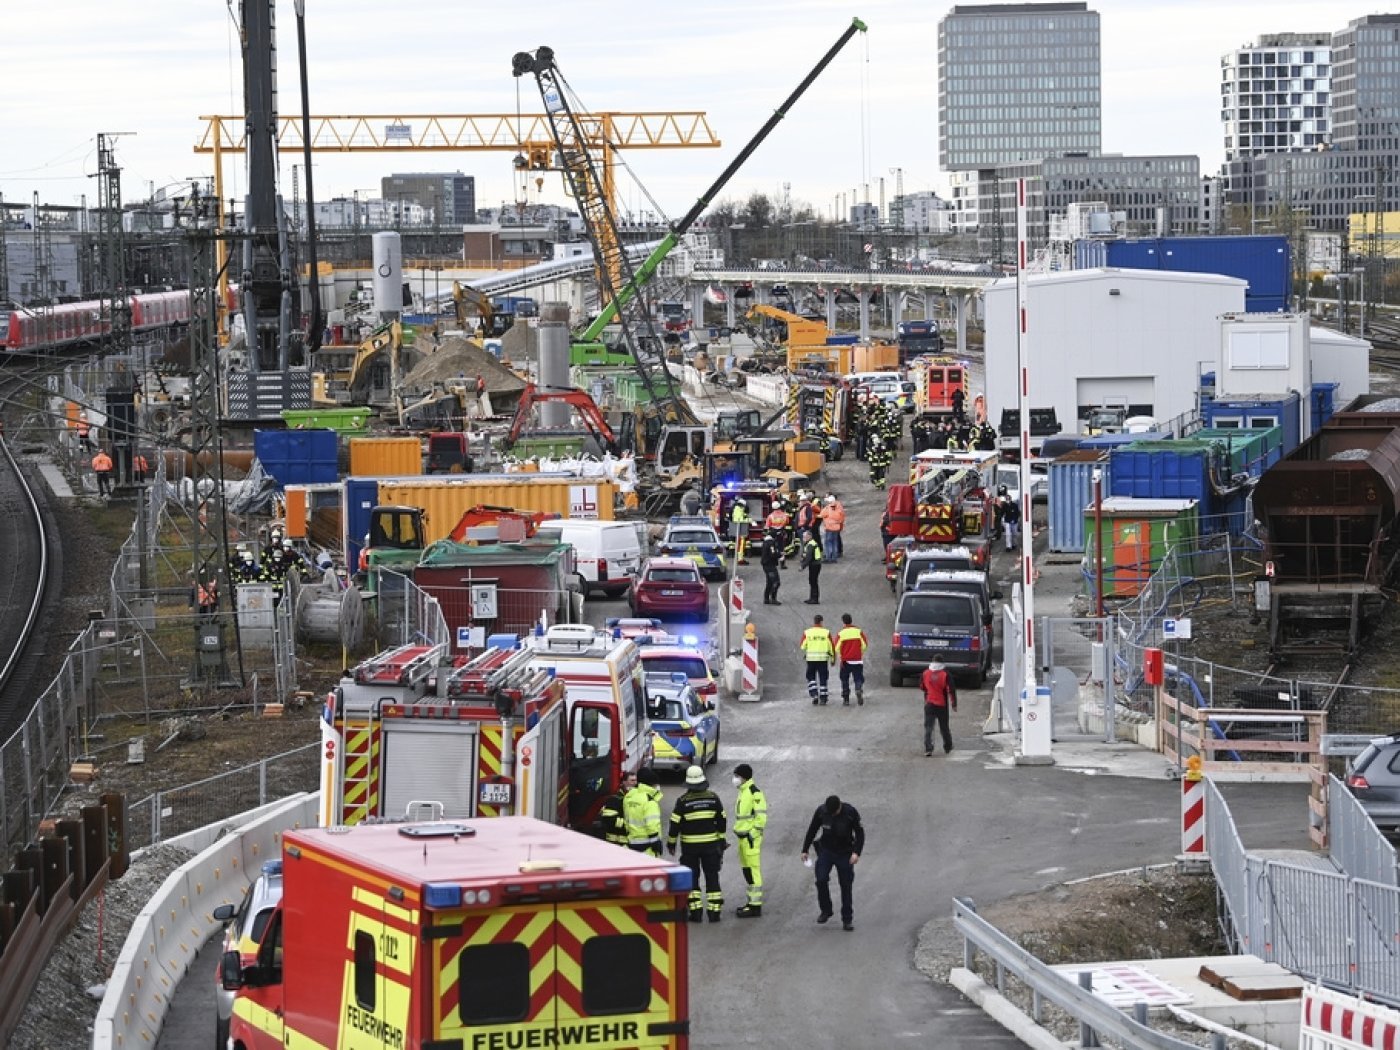 L'explosion s'est produite lors de travaux de forage, à proximité d'un pont que tous les trains doivent traverser pour entrer dans la gare centrale munichoise et en sortir.